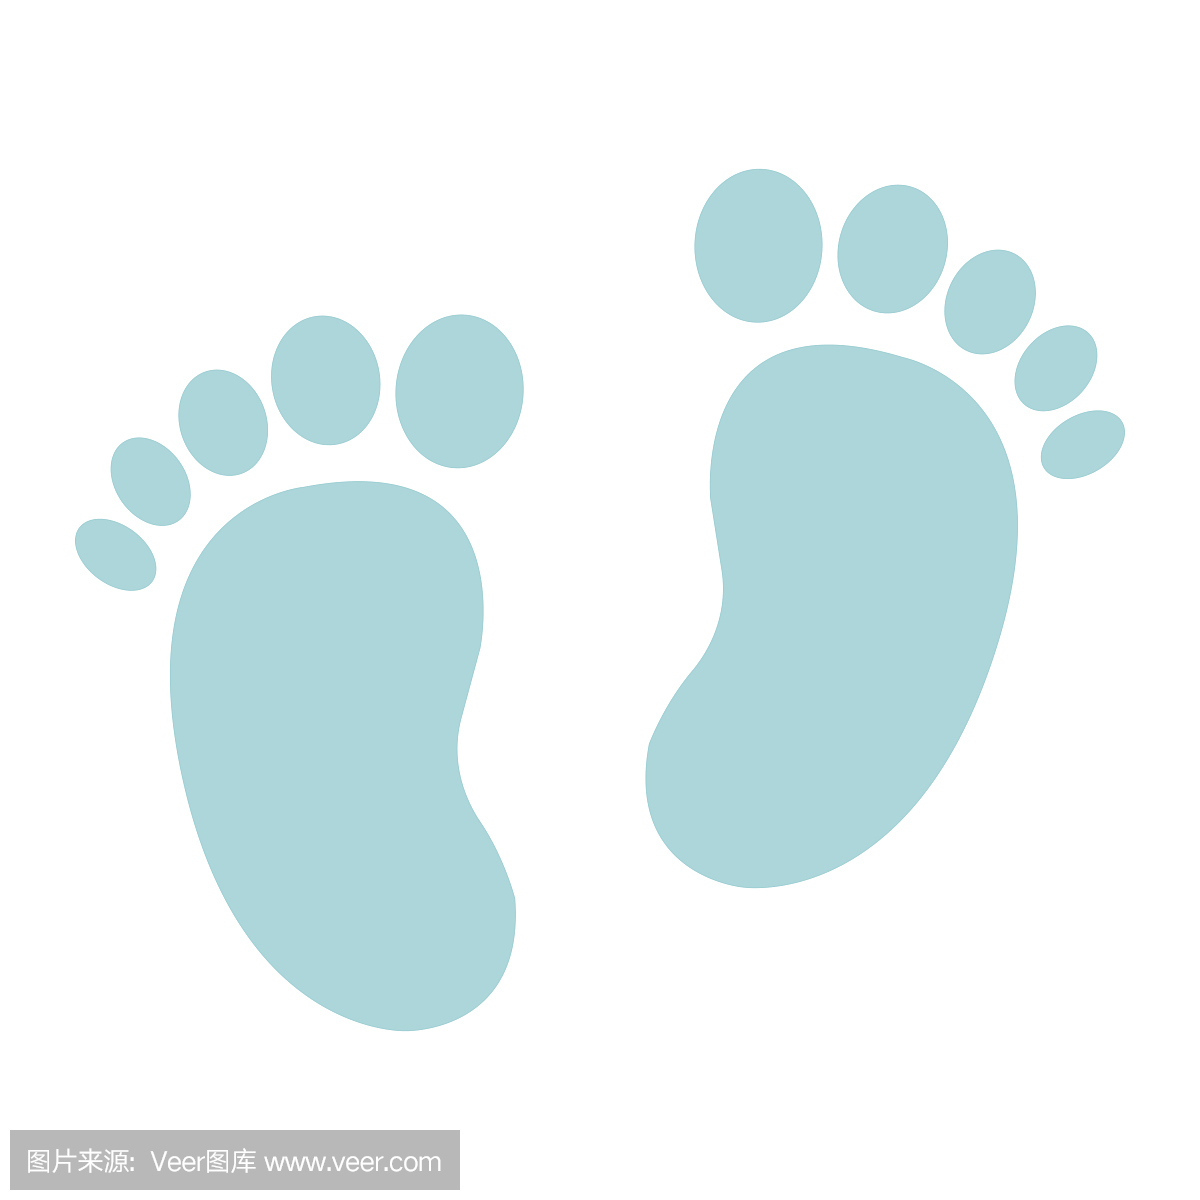 婴儿脚印平面图标,脚剪影,矢量图形,在白色背景